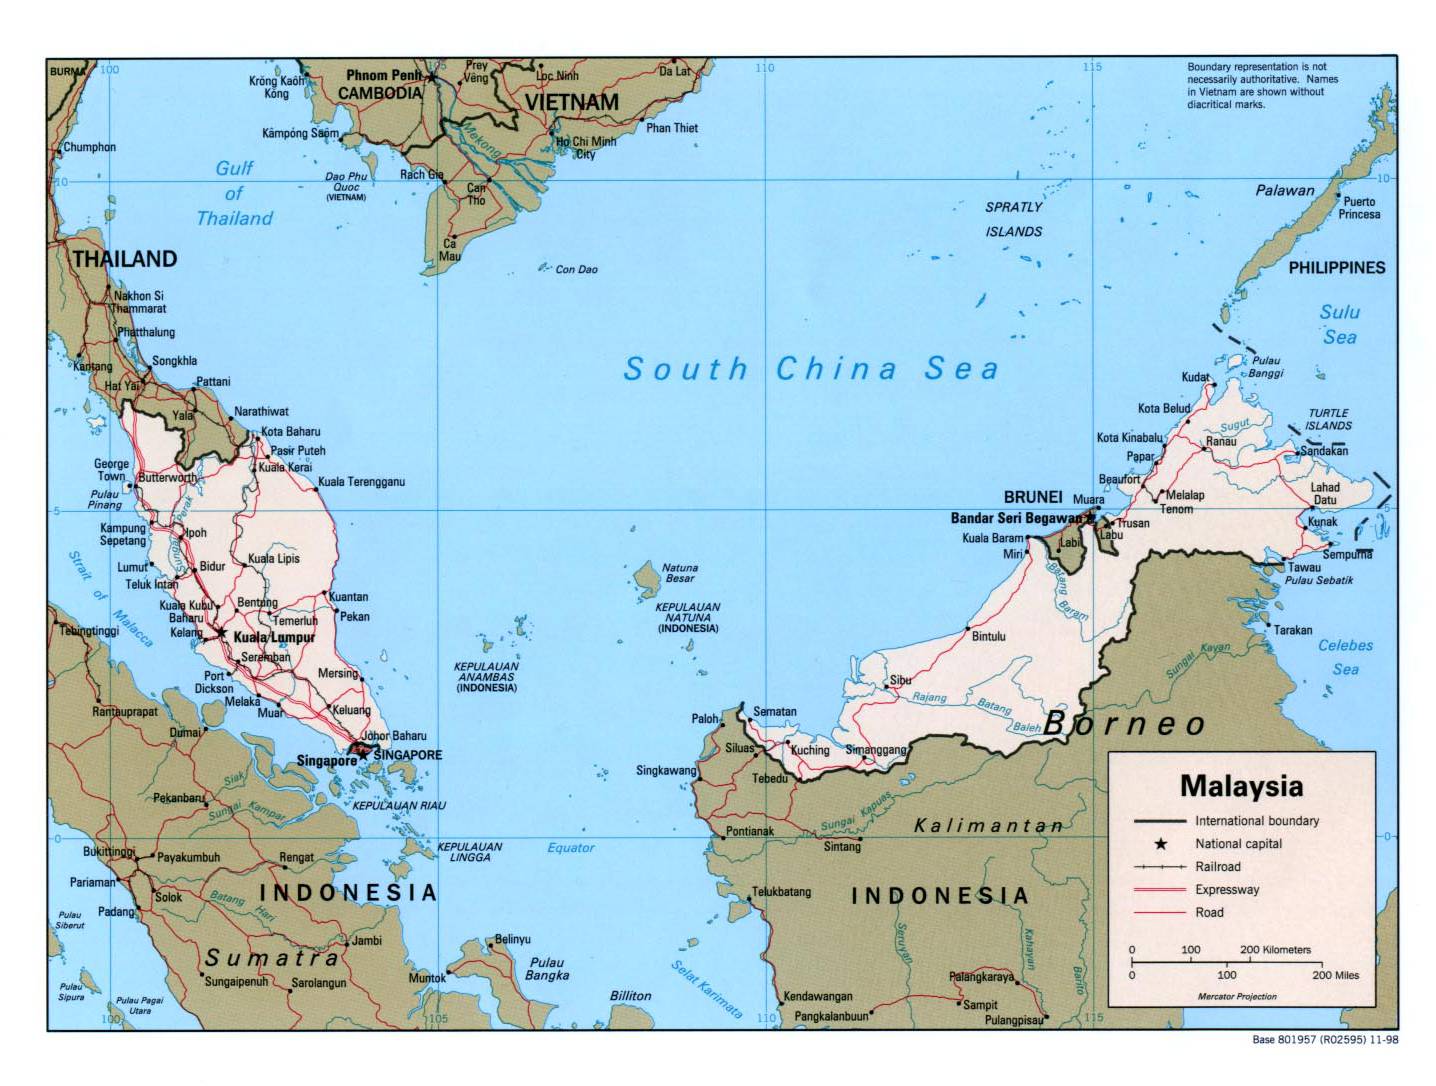 马来西亚半岛面积图片